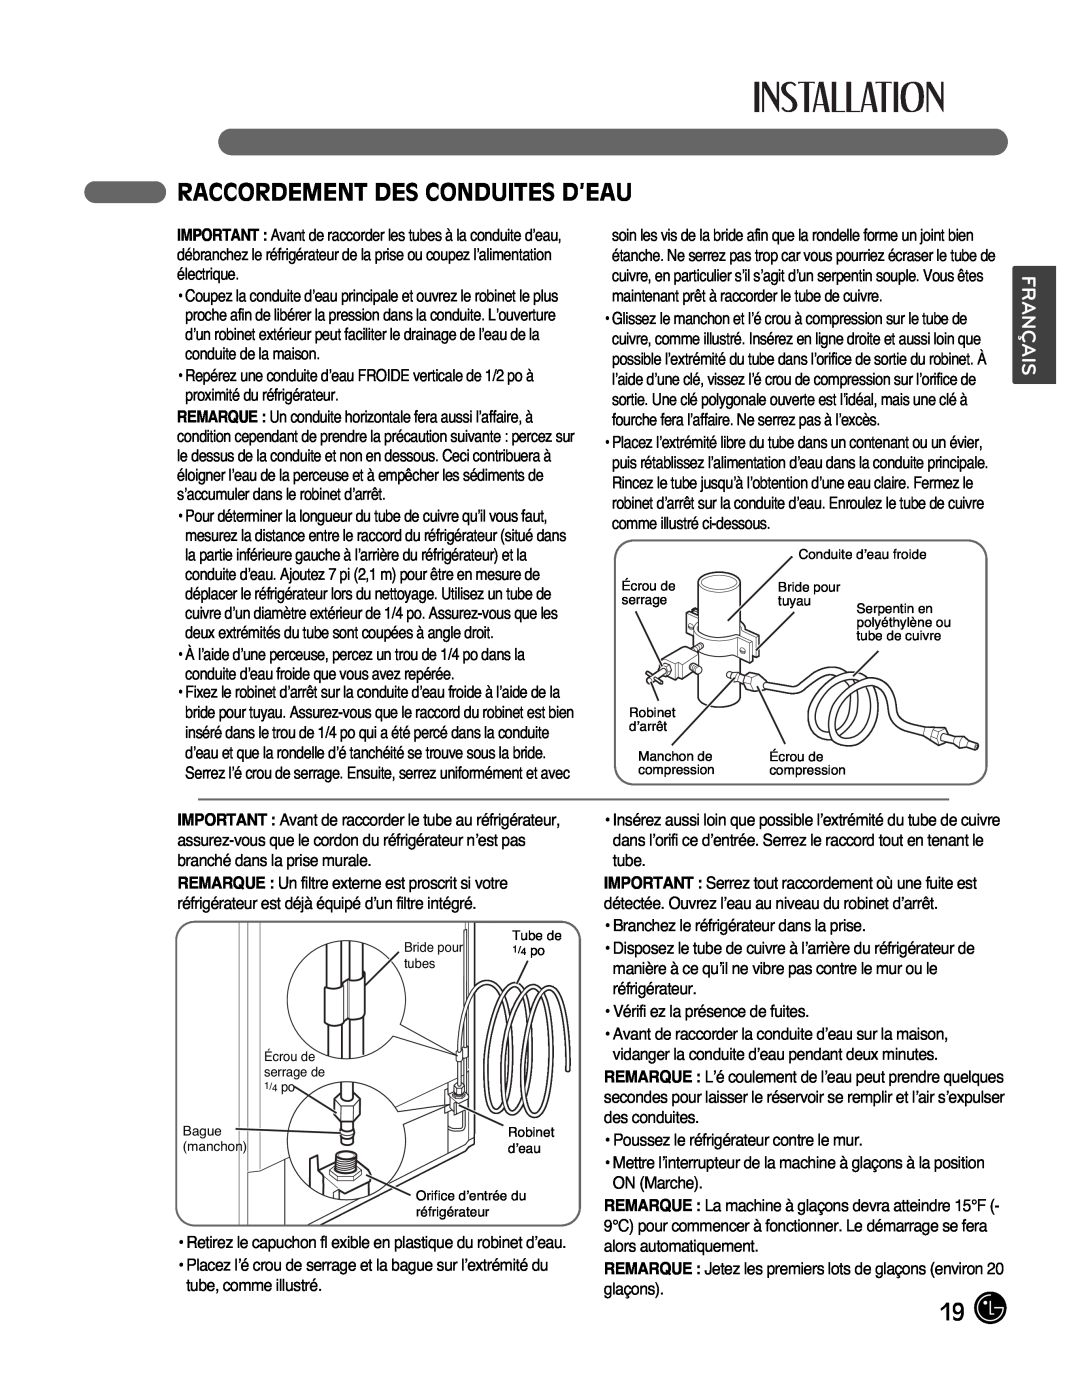 LG Electronics LMX25988ST owner manual Raccordement Des Conduites D’Eau, Français 